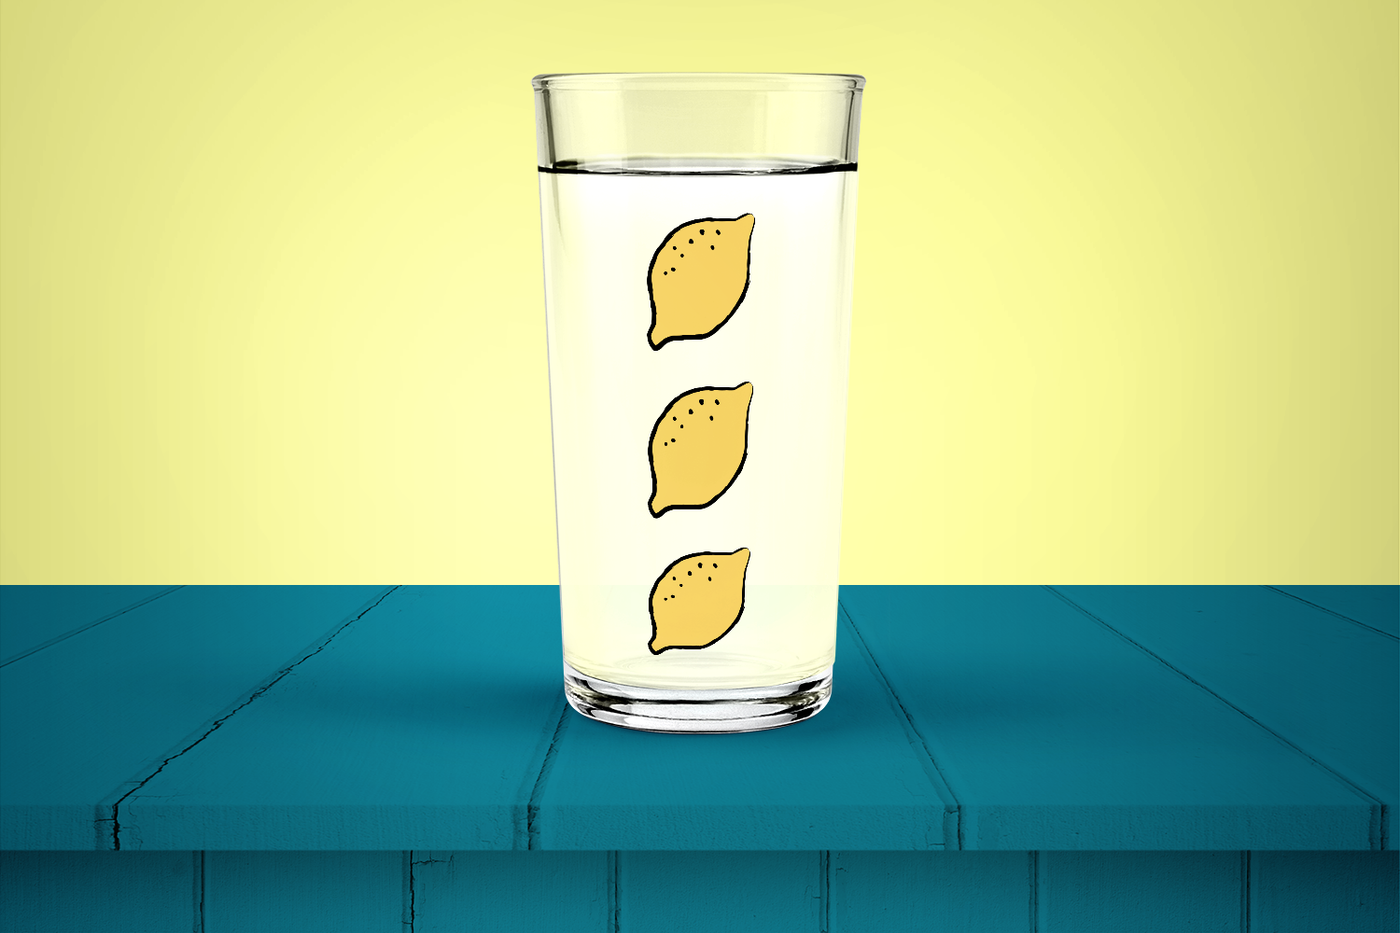 3 lemons design